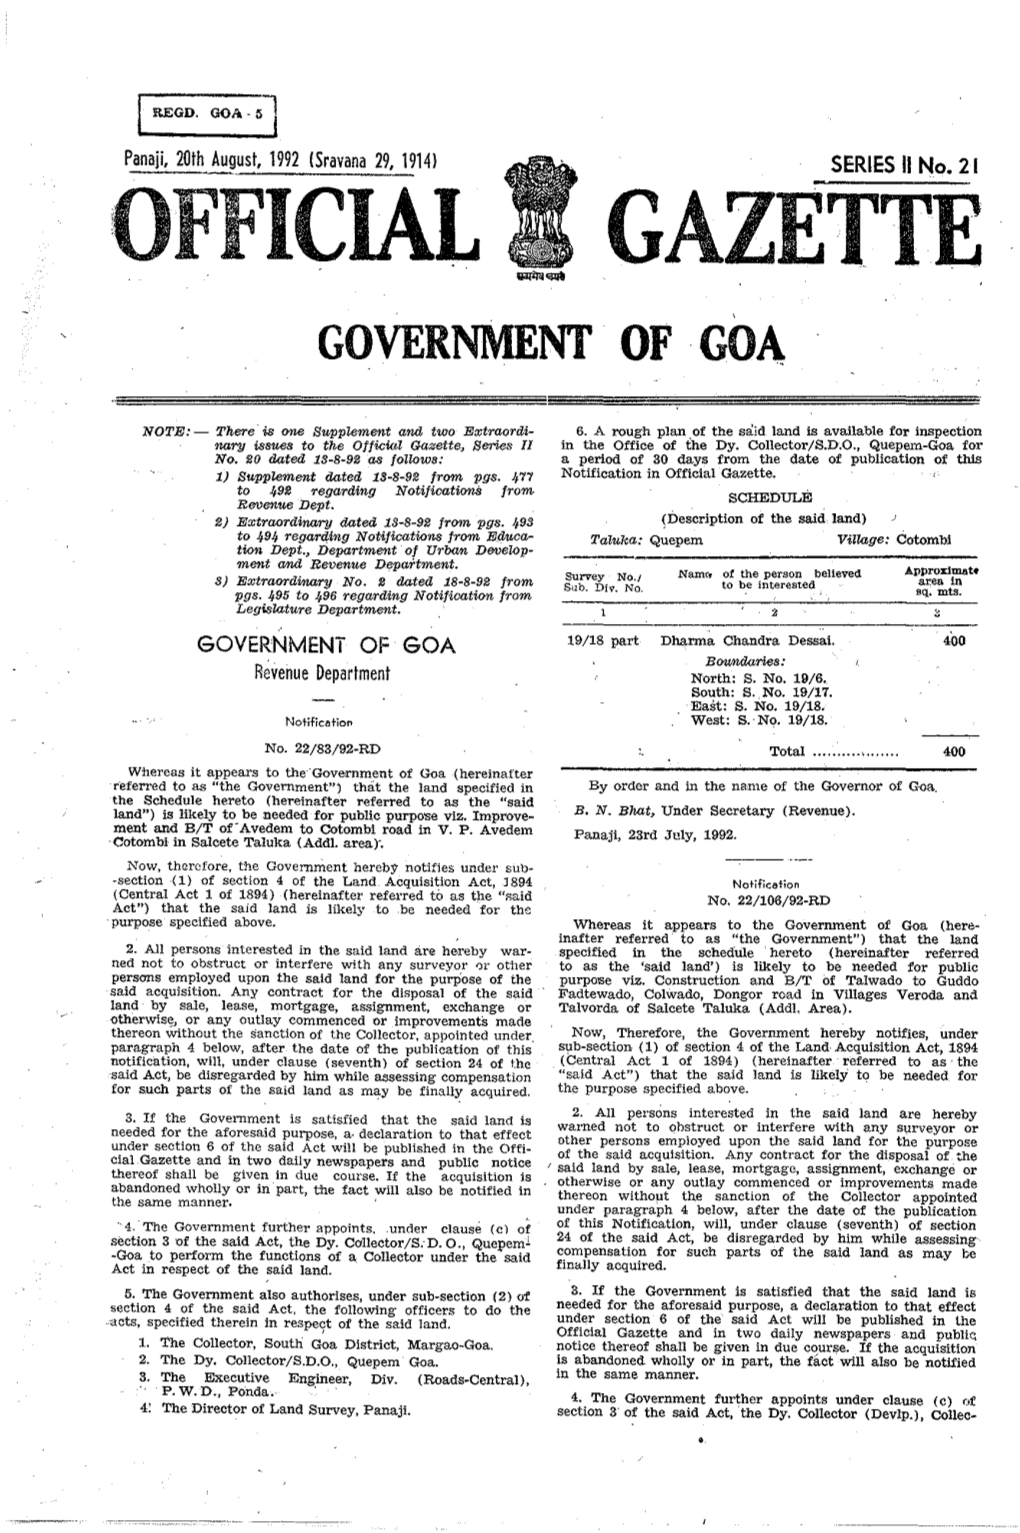 Official Gazette Government of Goa